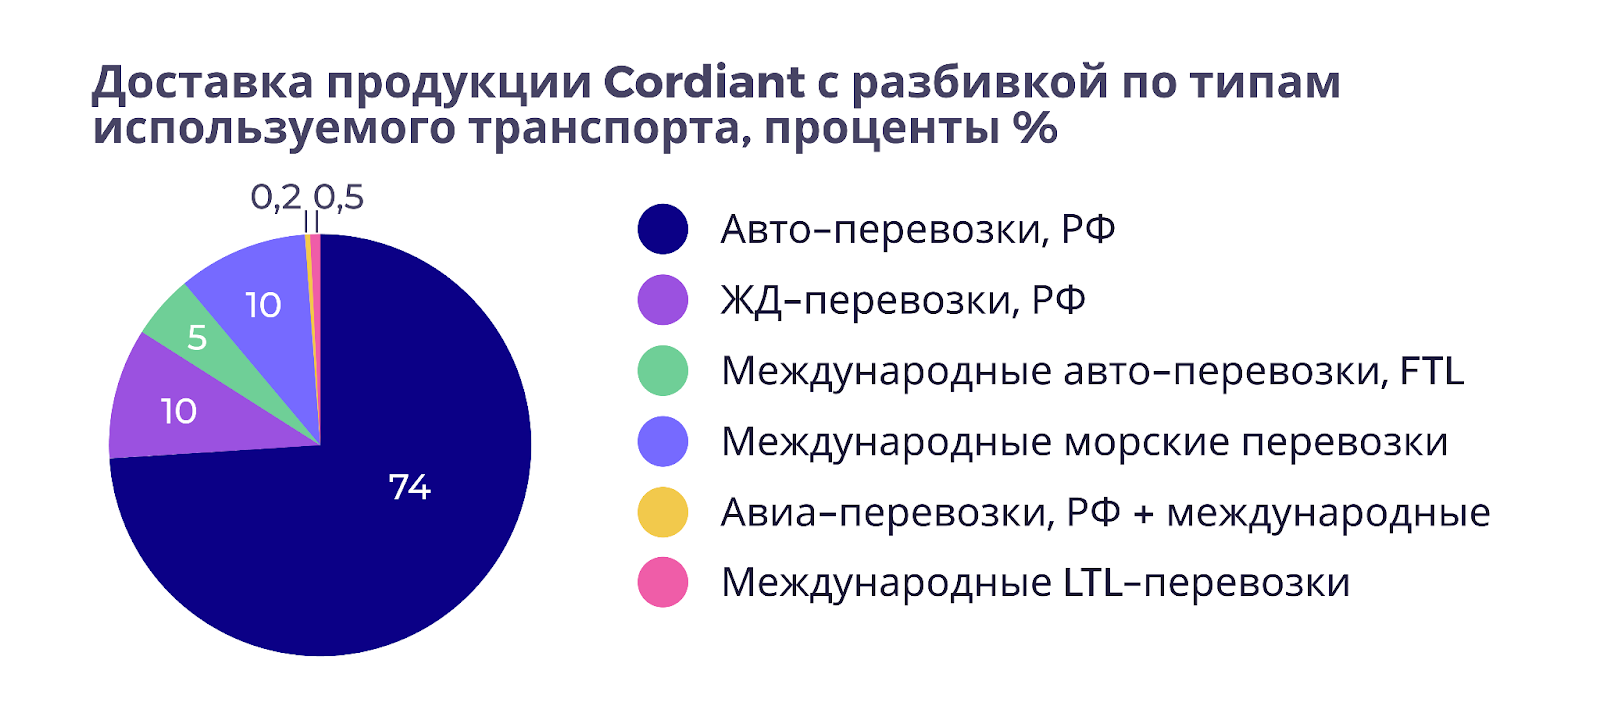 Как Cordiant за год сэкономил 3,1 миллиона рублей на логистике